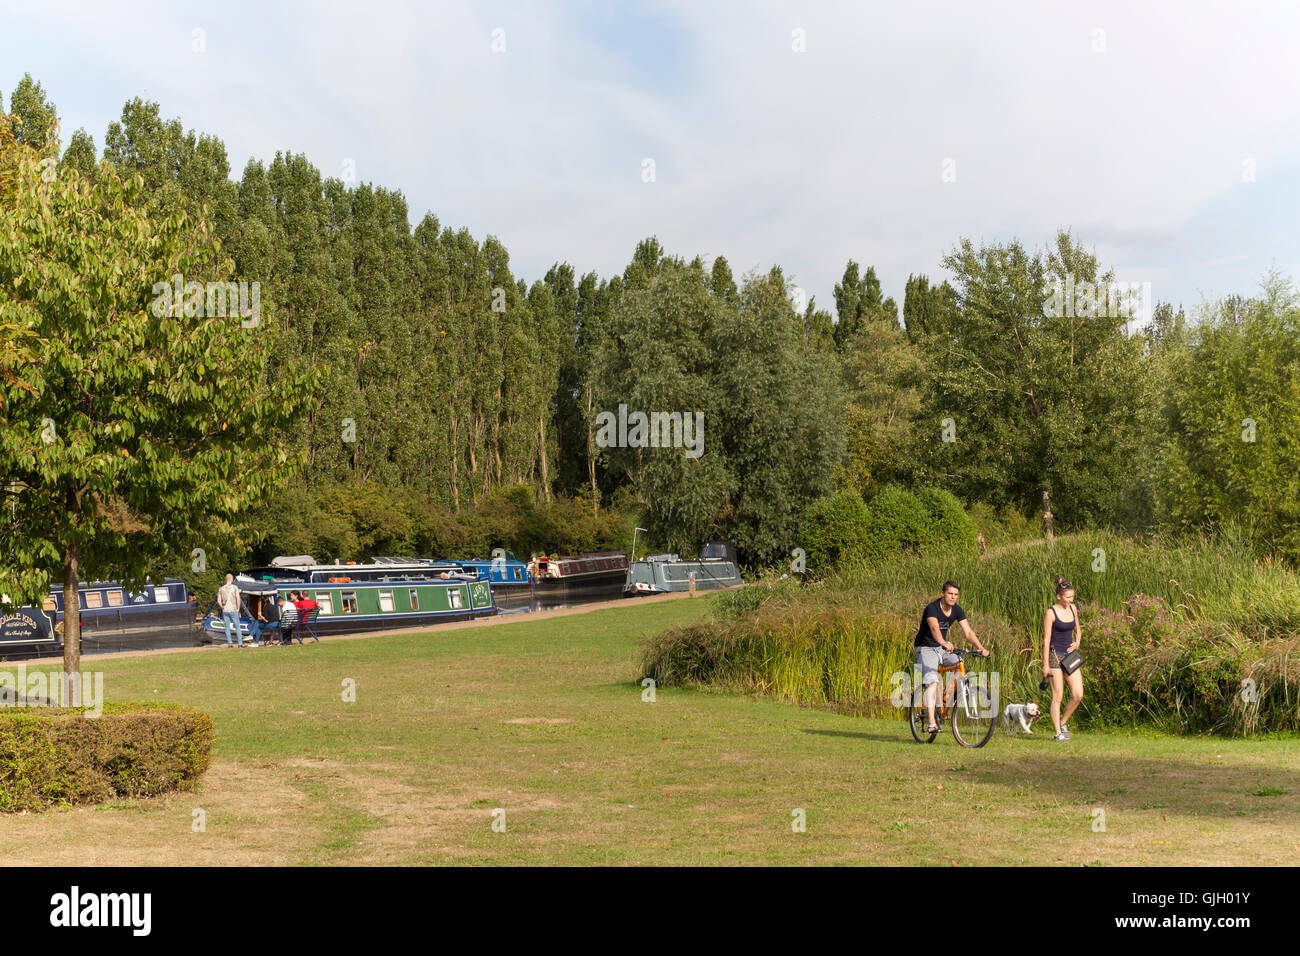 Milton Keynes, Royaume-Uni. 16 août, 2016. Une journée d'été au parc Campbell montrant le bateau moorings sur le Grand Union canal et les gens de côté le magnifique lac bénéficiant d'une belle journée calme. Crédit : Robert Norris/ Alamy Live News Banque D'Images